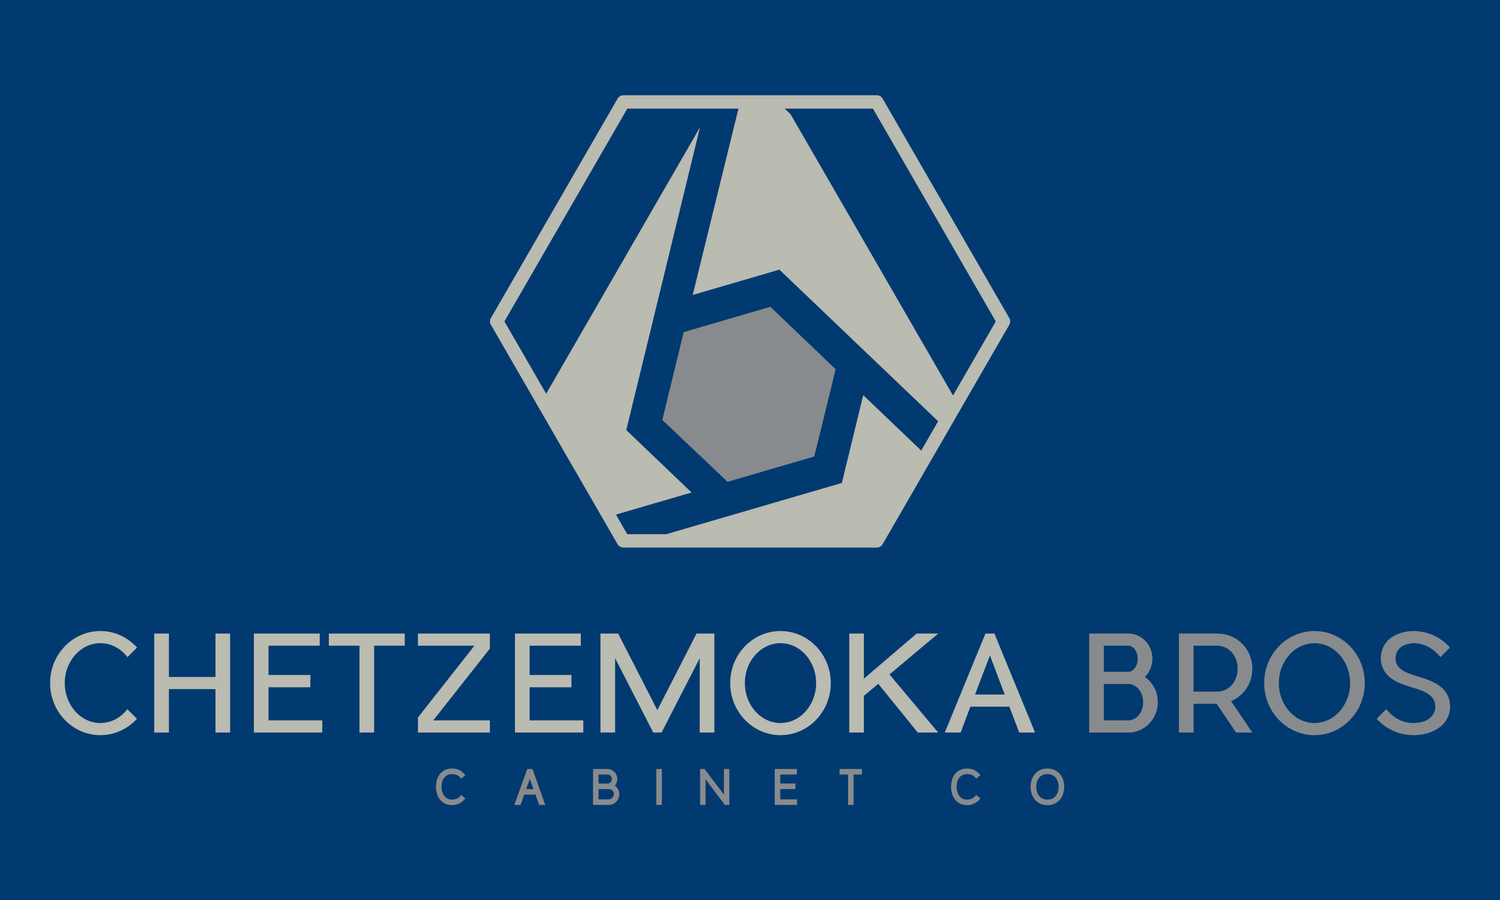 Chetzemoka Bros Cabinet Co.